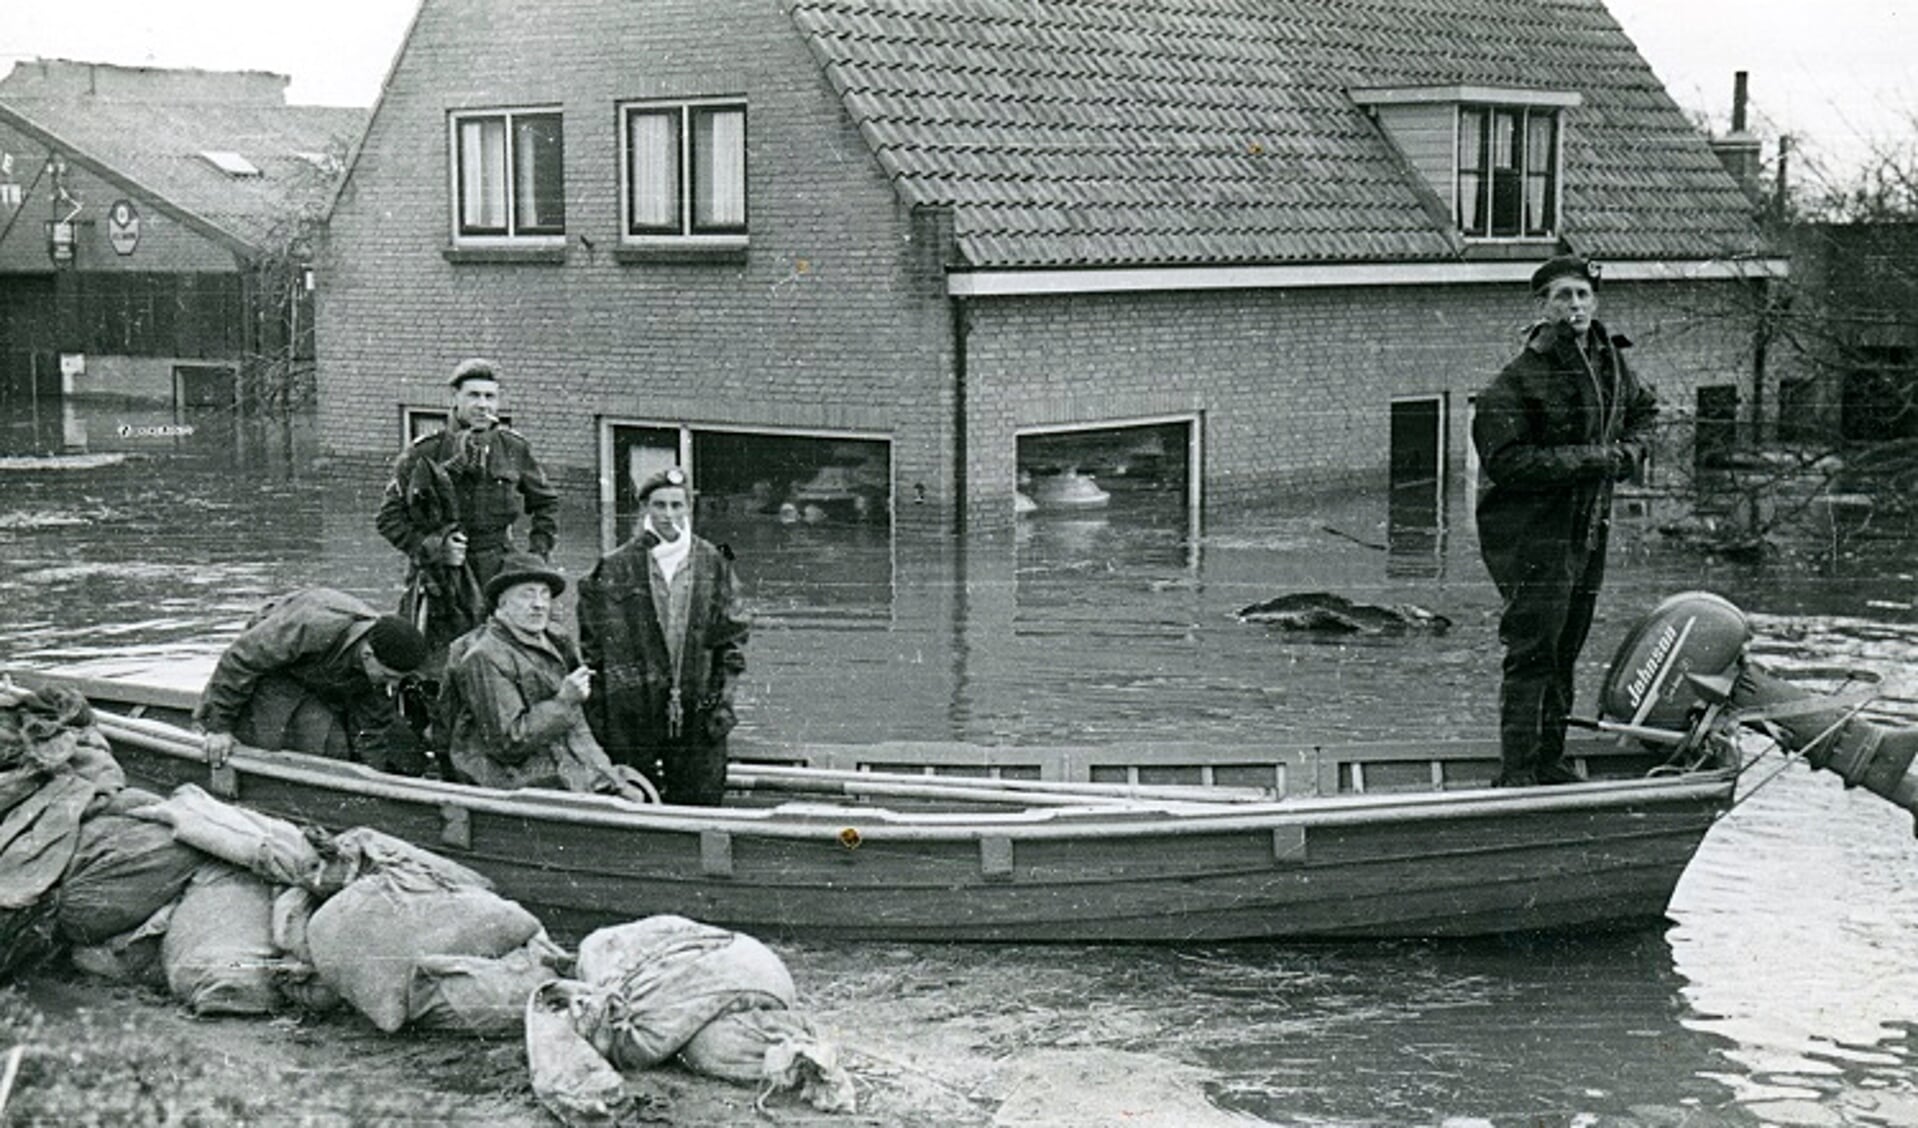 Watersnood 1953 aan de Strijensestraat in 's-Gravendeel. De lampenwinkel van A. Barth en links garagebedrijf A.J. Barth.